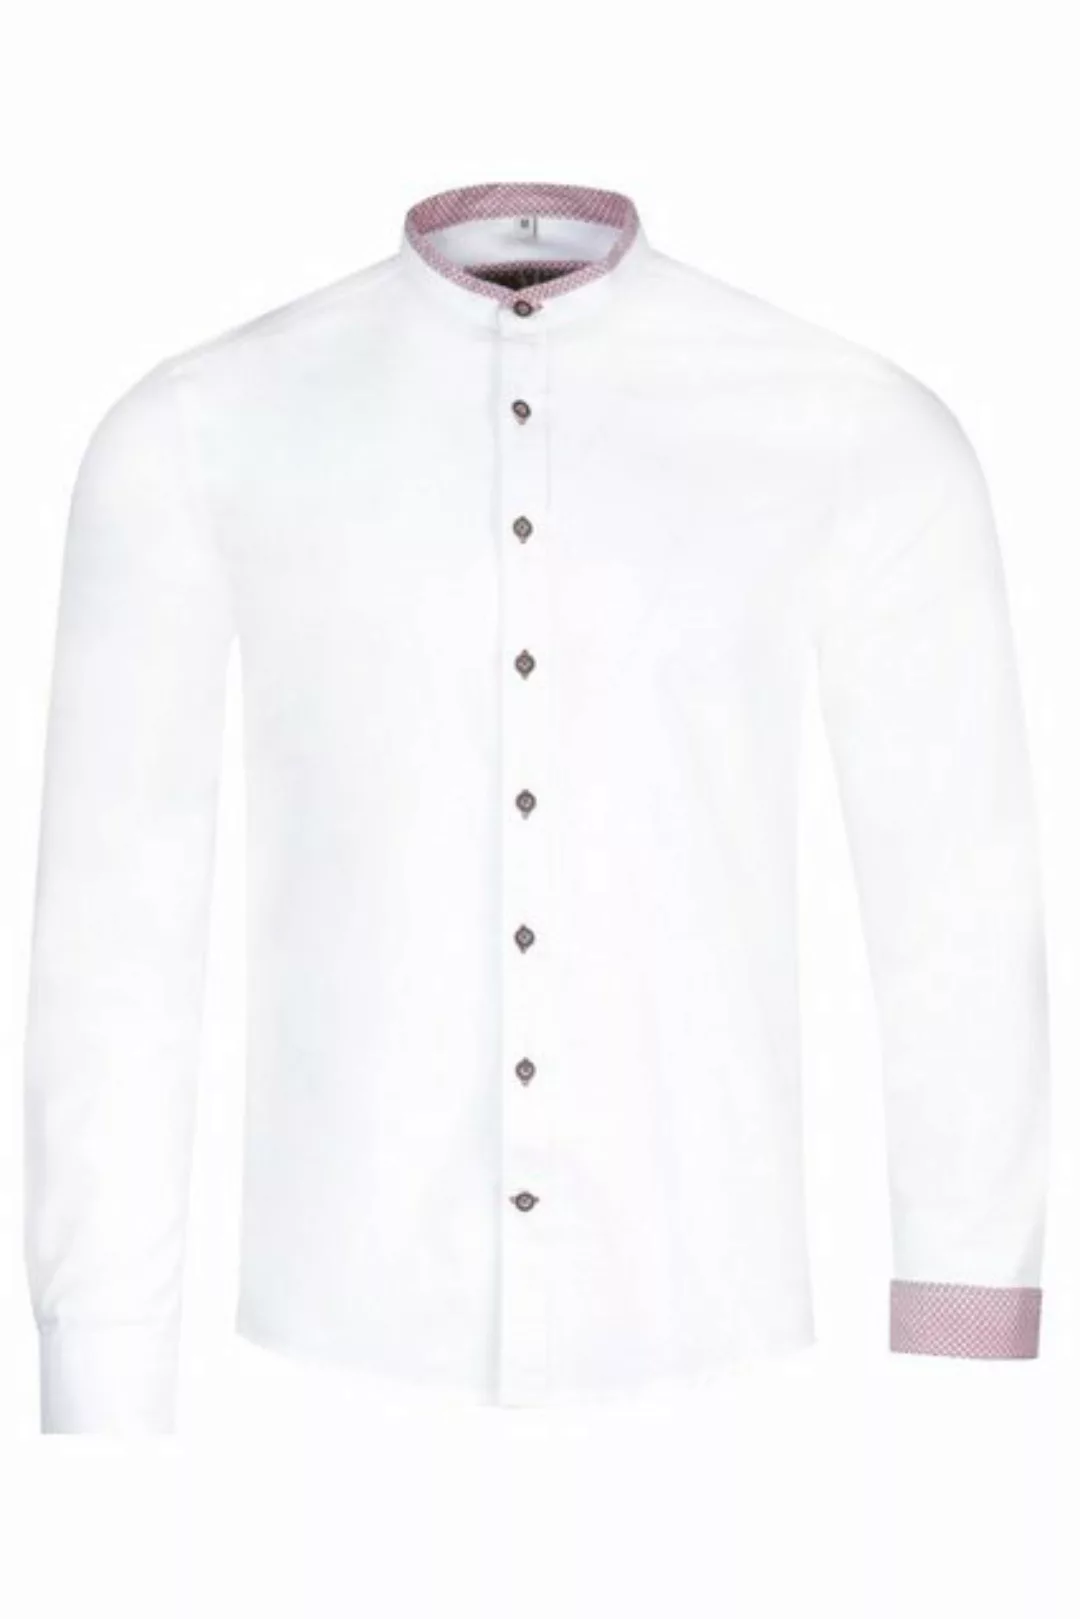 MarJo Trachtenhemd Trachtenhemd - GEORG - weiß/bordeaux, weiß/blau günstig online kaufen